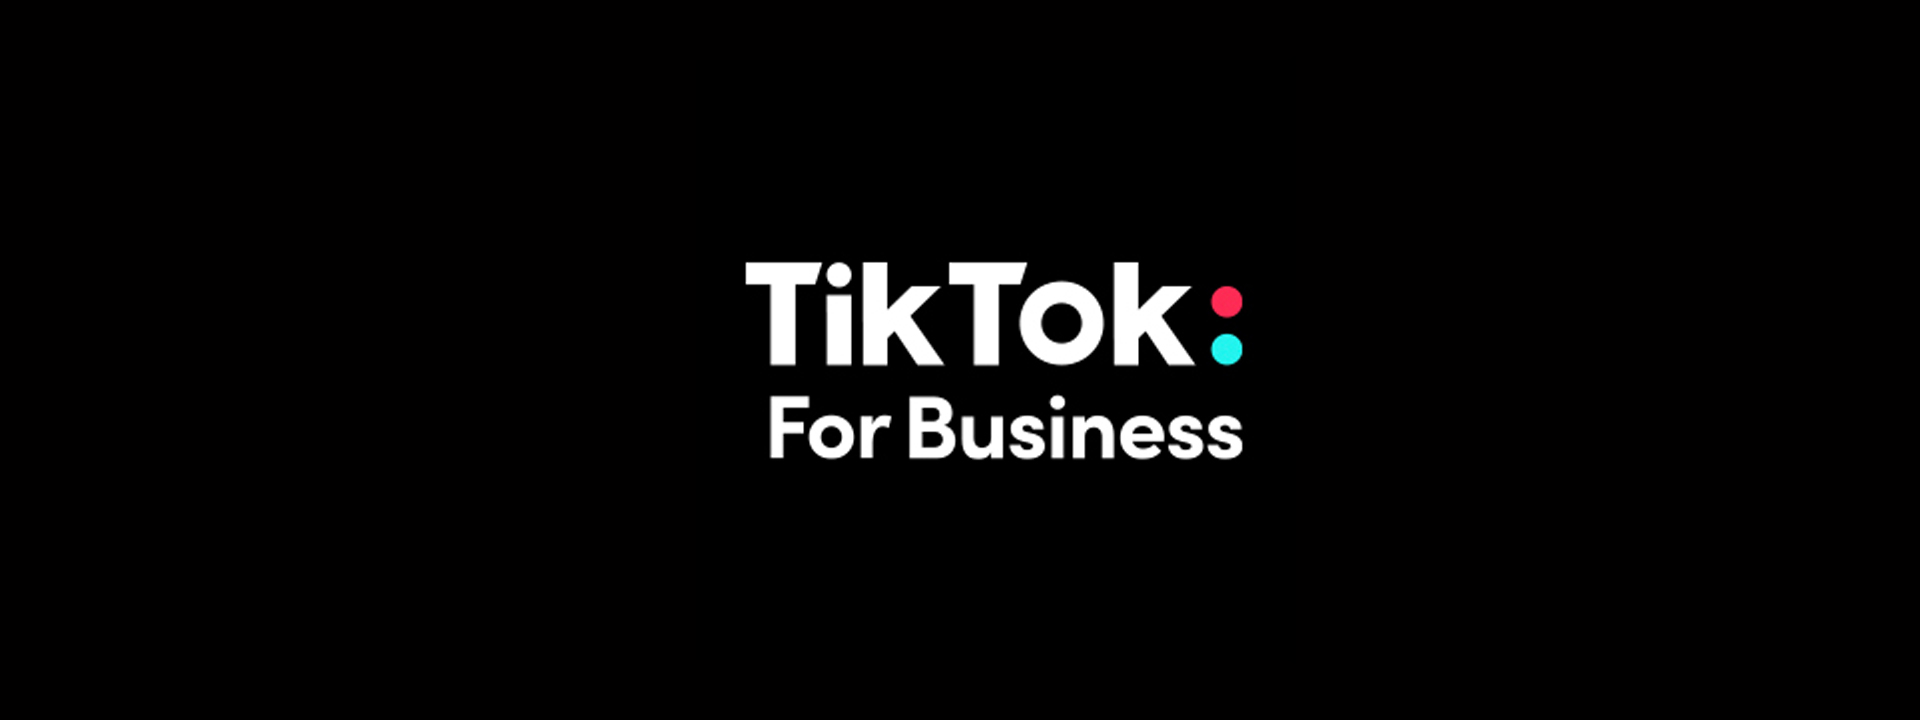 TikTok-For-Business